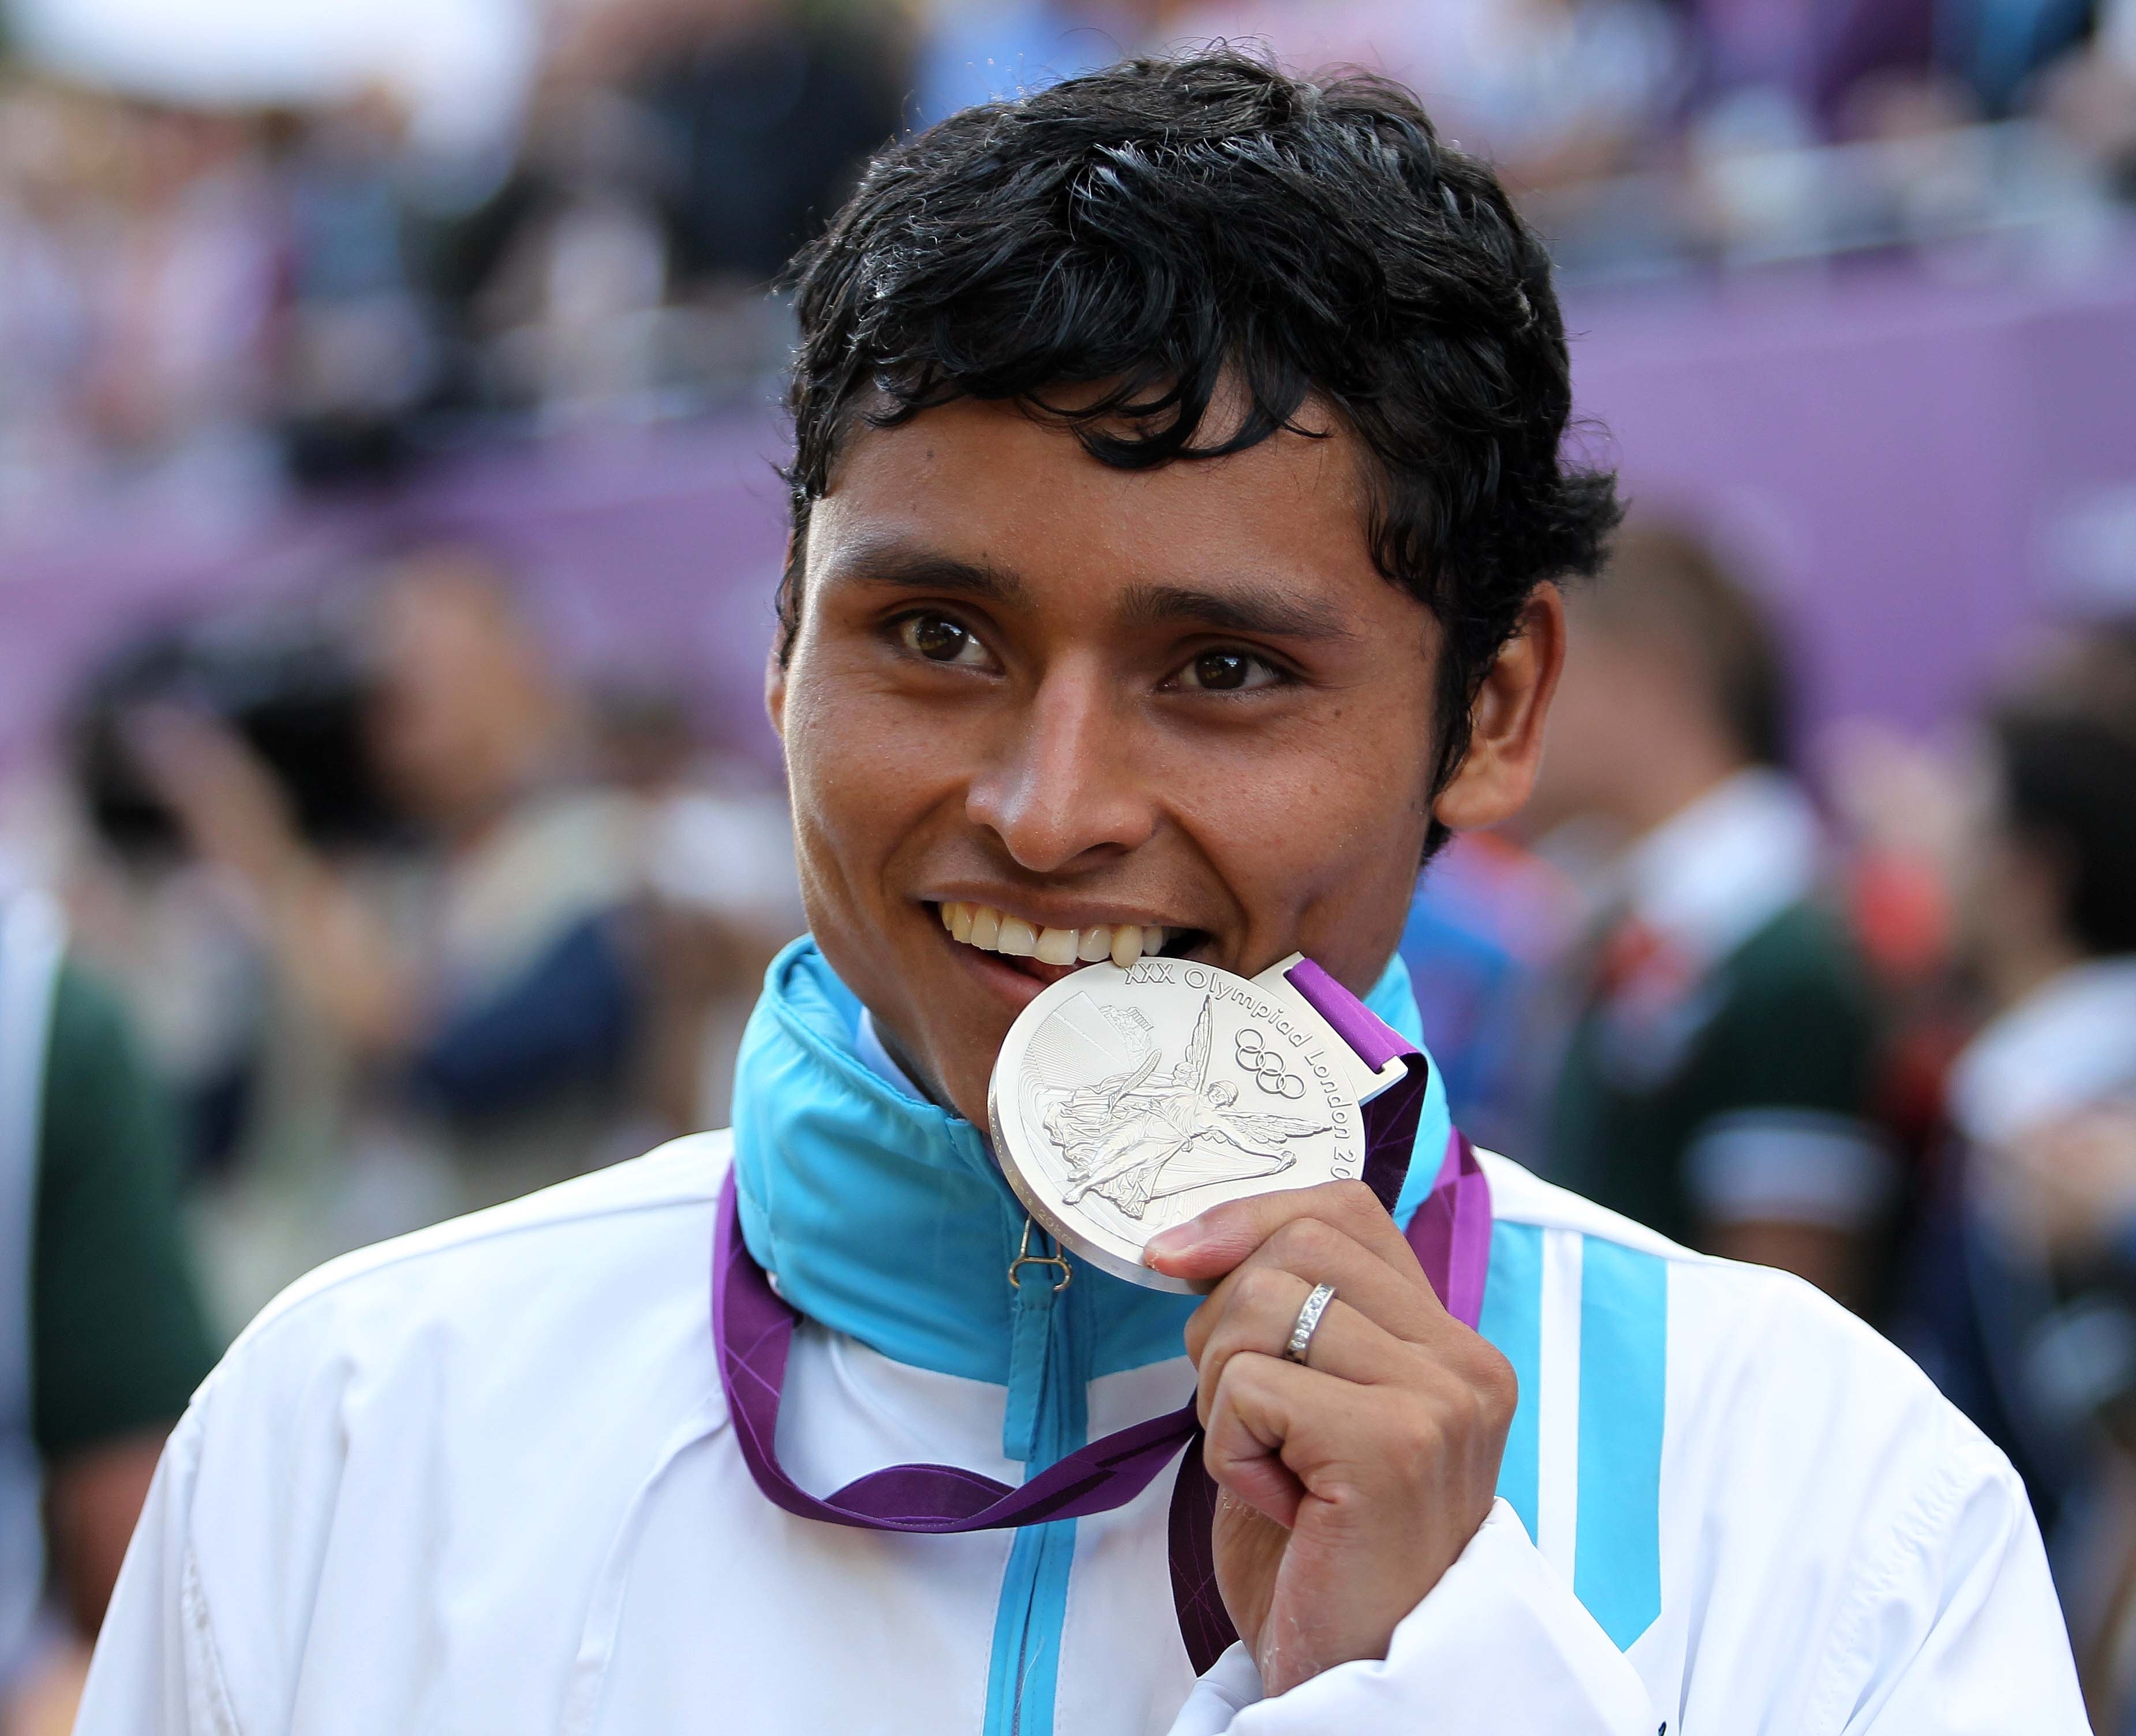 Erick Barrondo logró la primera medalla para Guatemala en Juegos Olímpicos, al ganar la plata en 20 kilómetros en marcha en Londres 2012. (Foto Prensa Libre: Romeo Ríos)